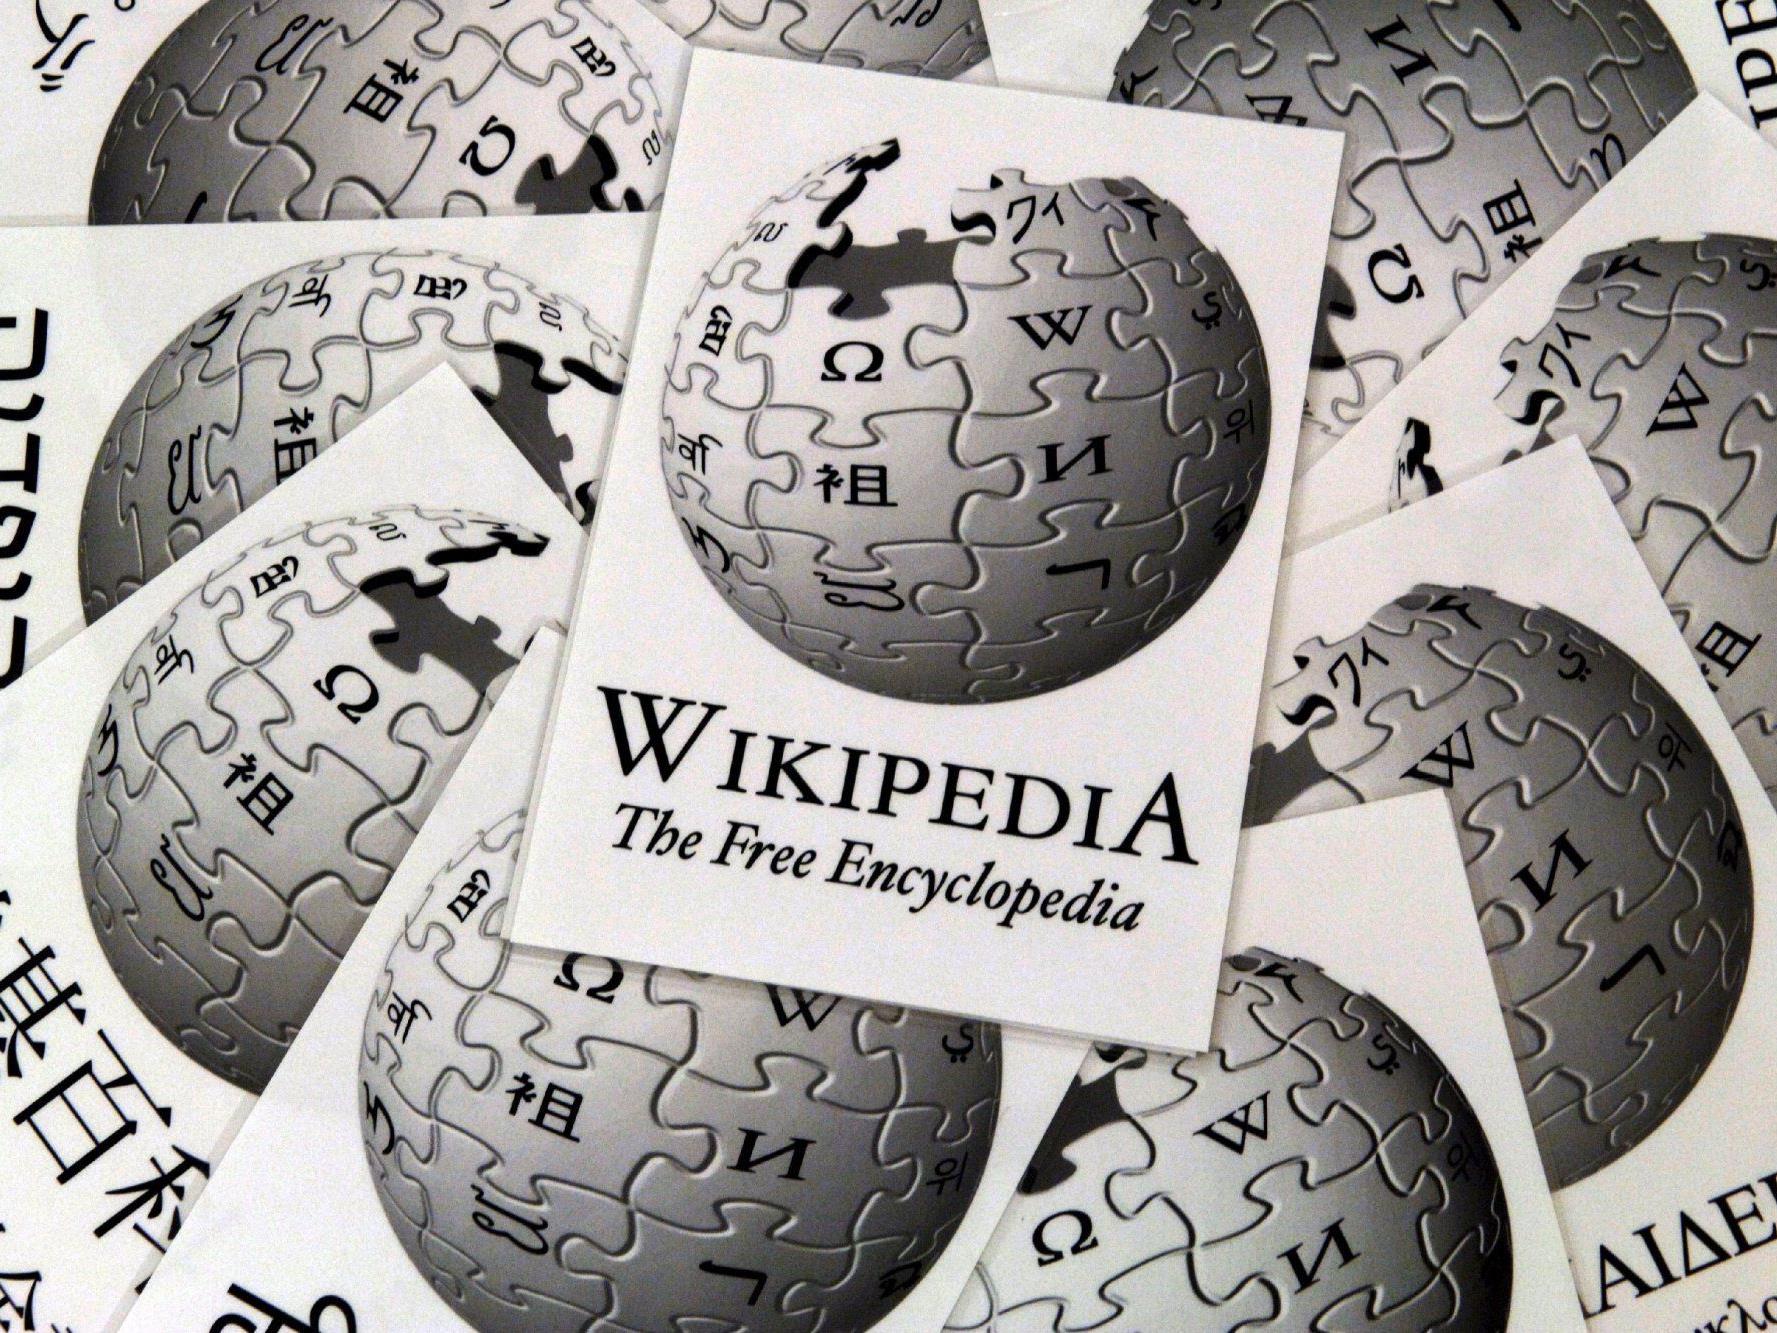 "Wie alle Inhalte von Wikipedia wird auch Wikidata frei zugänglich sein".